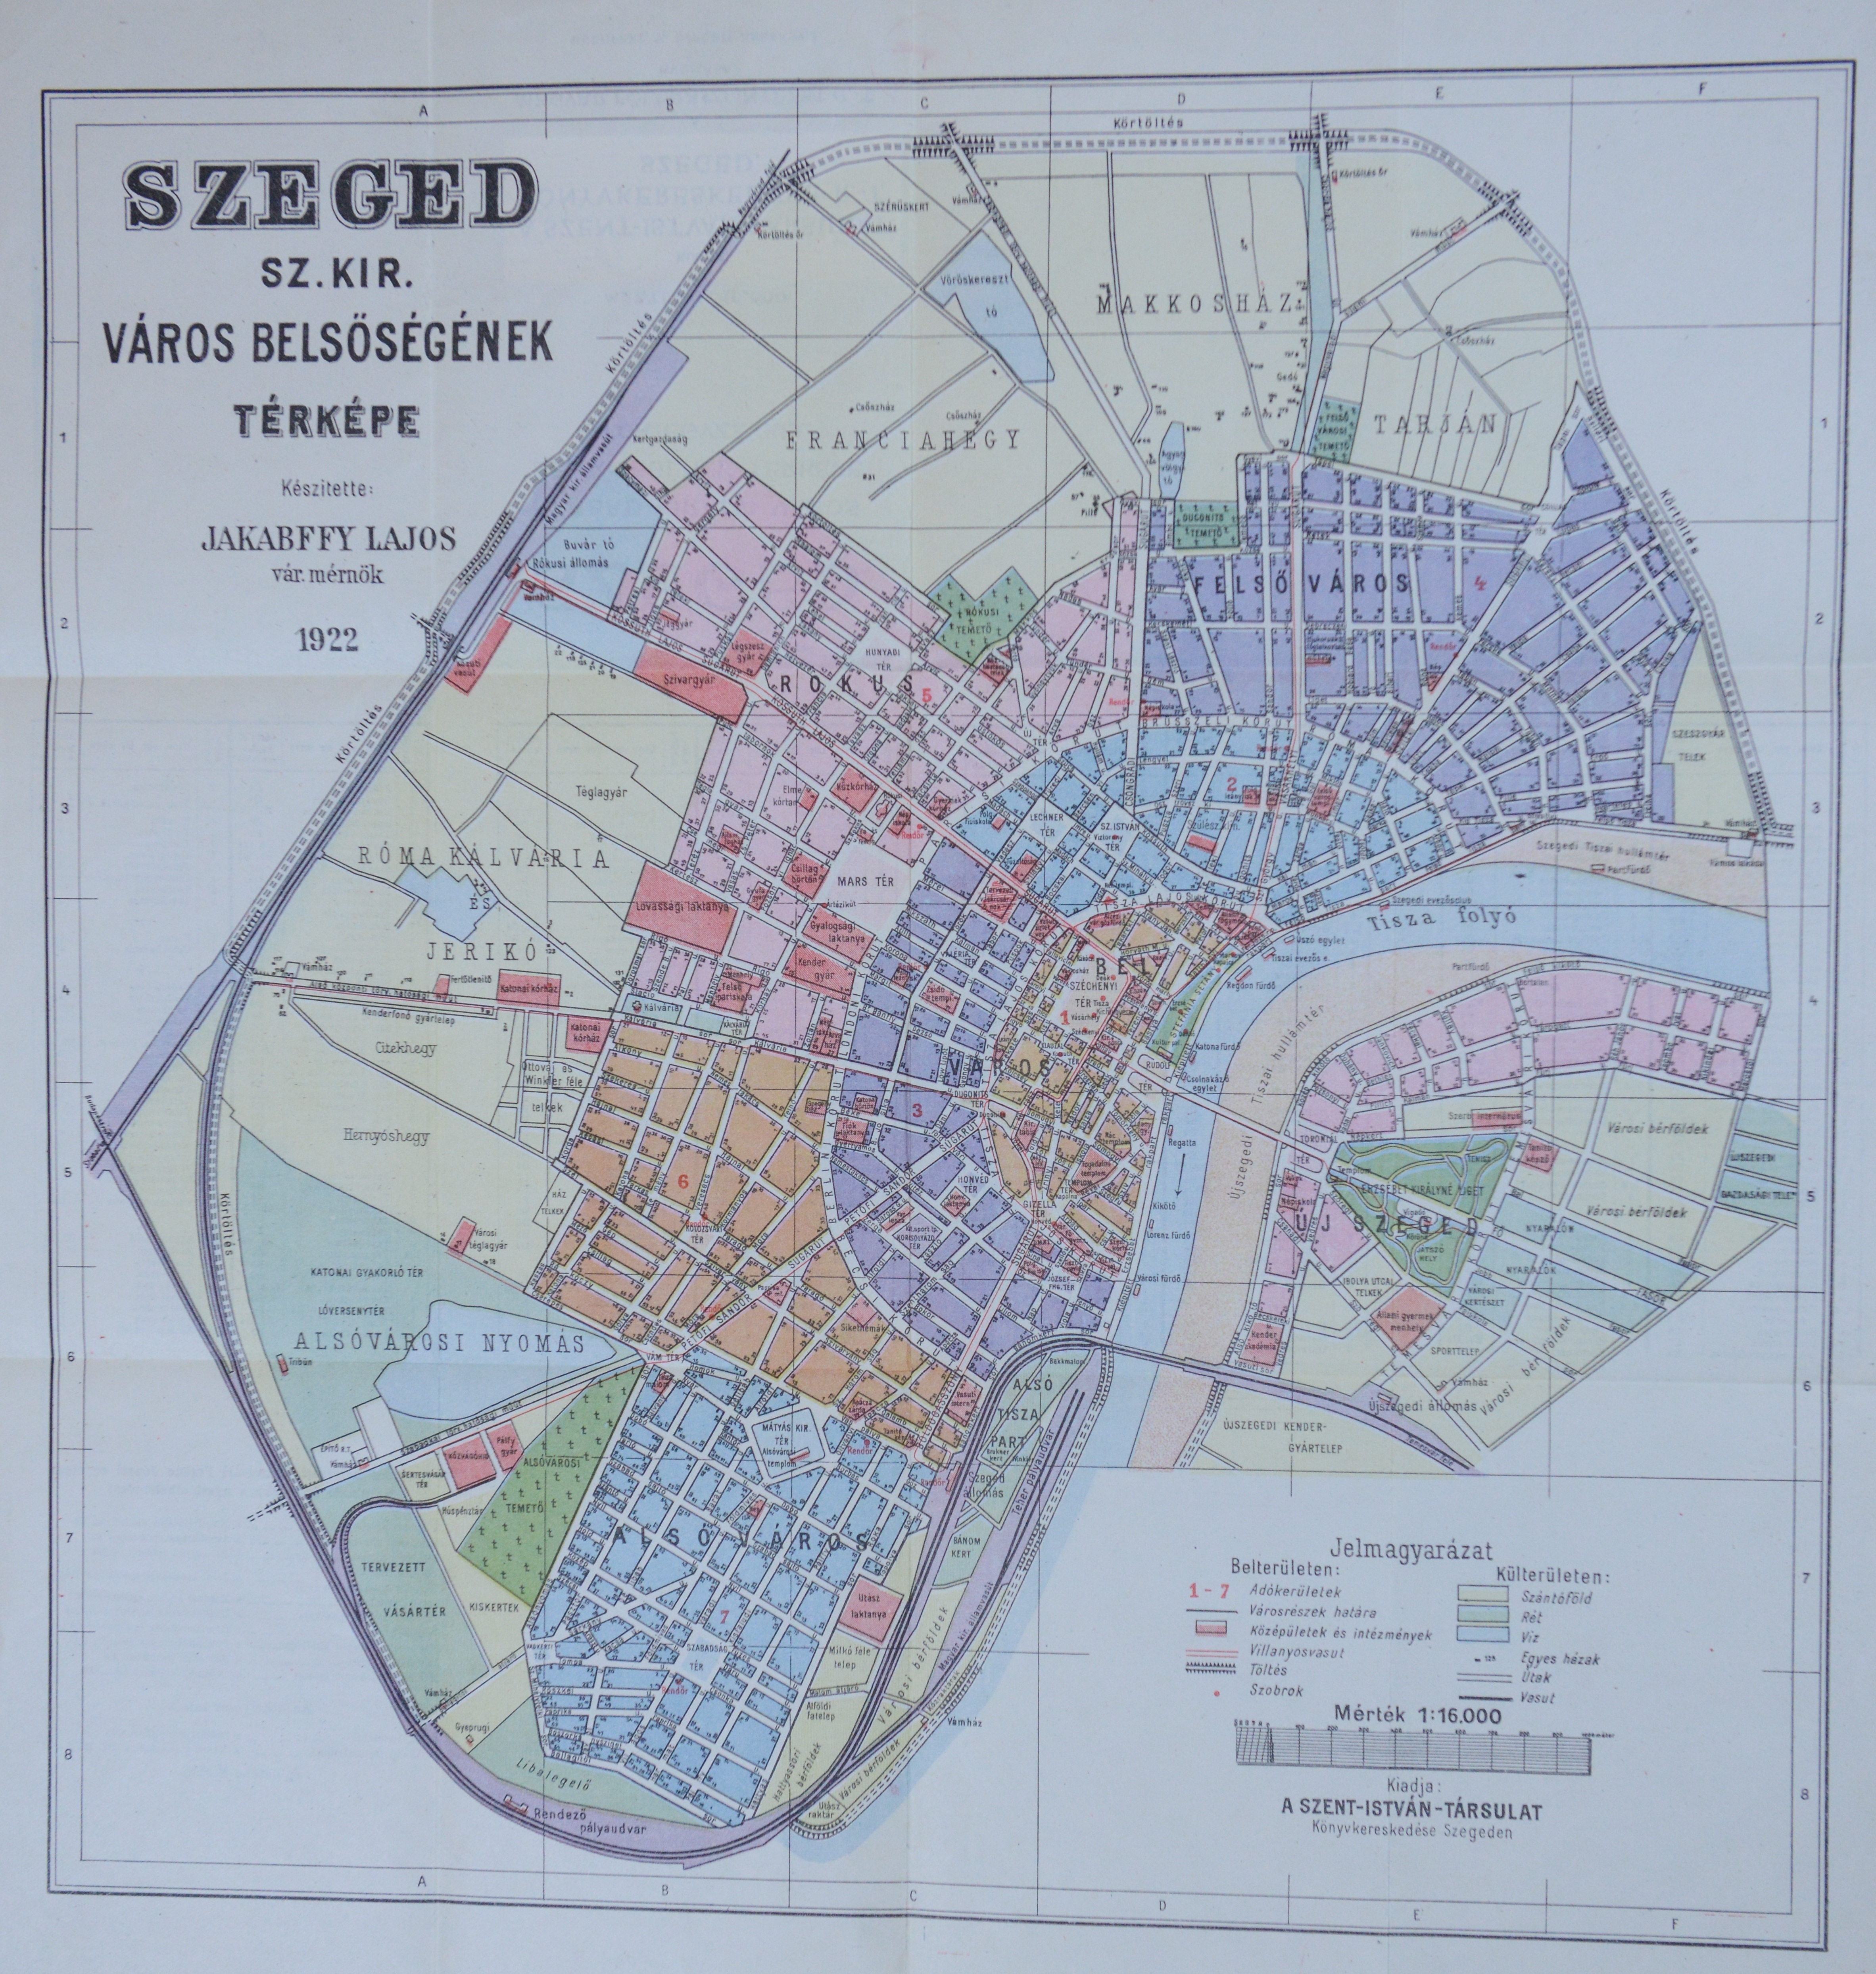 Szeged város belsőségének térképe utcajegyzékkel